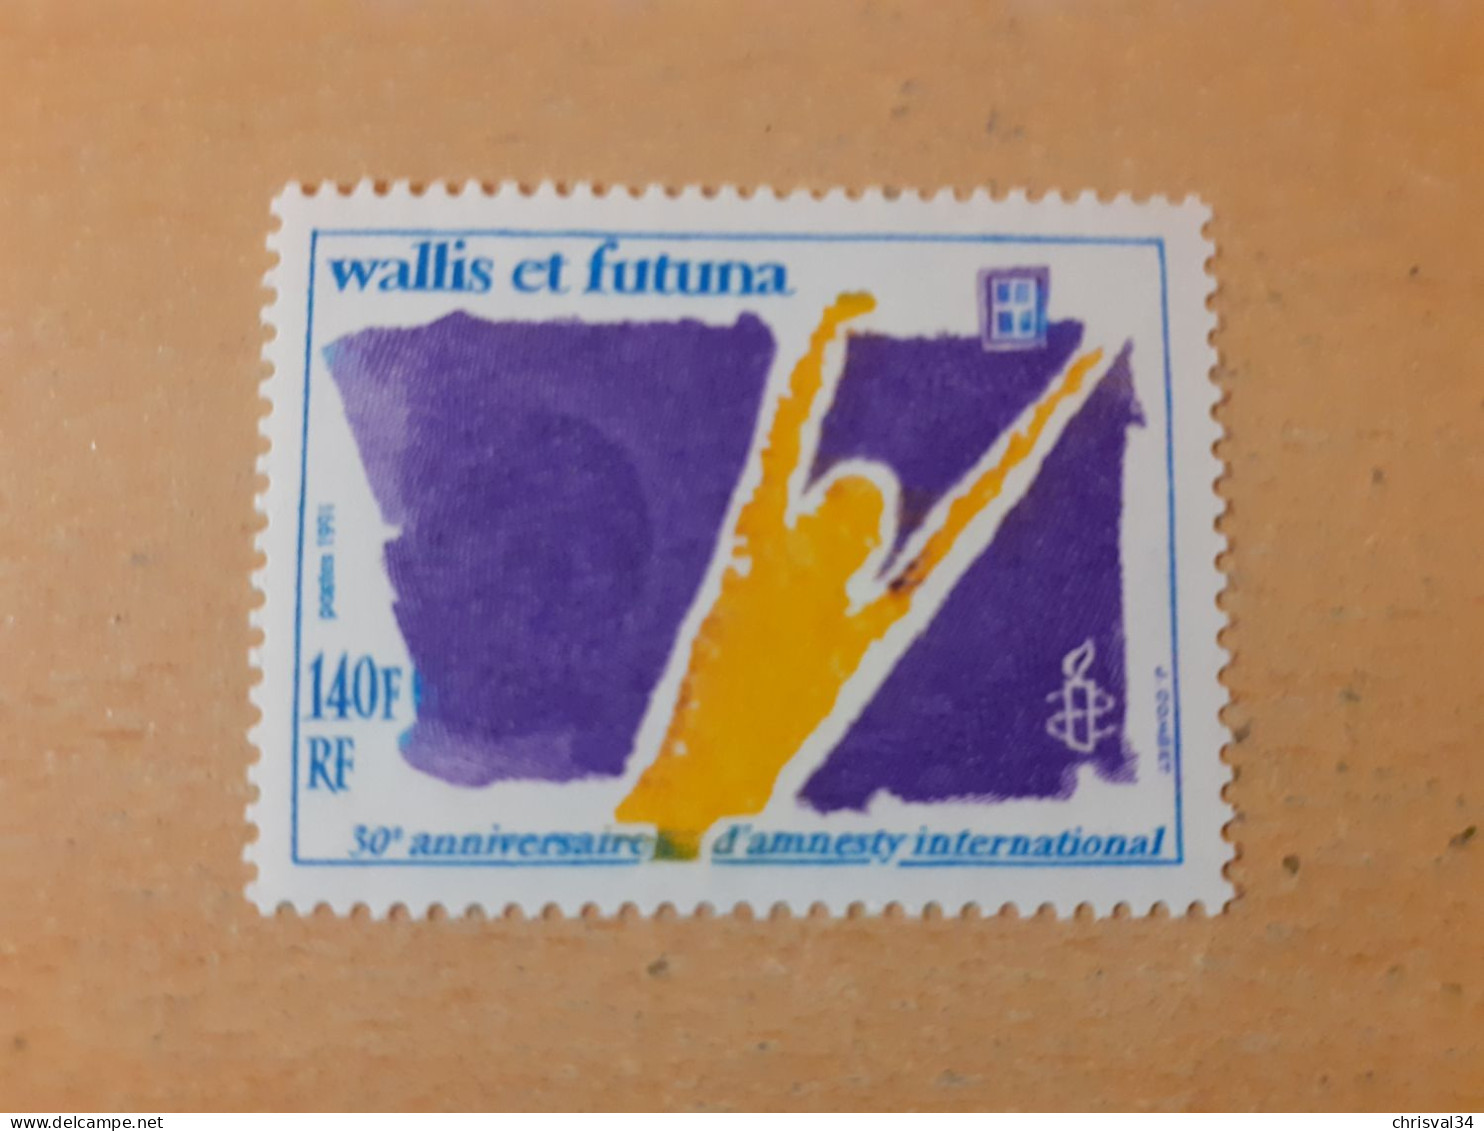 TIMBRE  WALLIS-ET-FUTUNA    N  417    COTE  4,60  EUROS   NEUF  SANS   CHARNIERE - Neufs